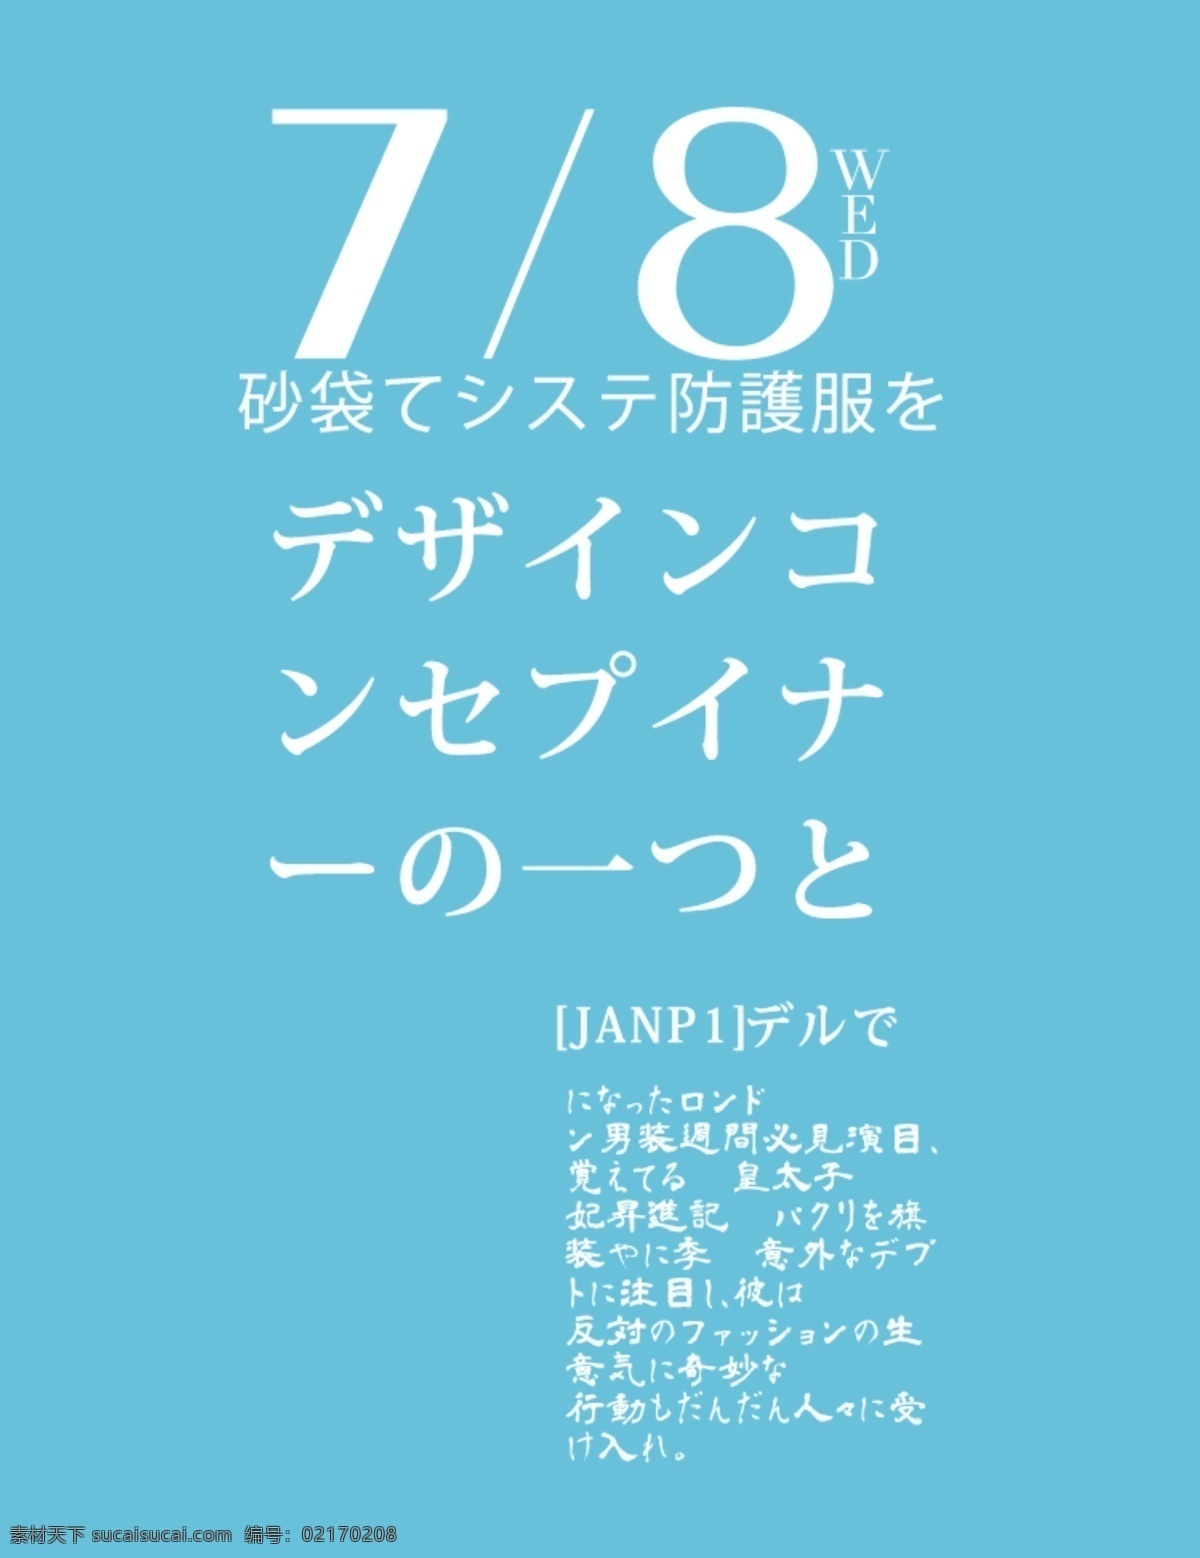 日文排版 排版样式 文字排版 psd素材 排版设计 日本文字 创意排版 字体设计 杂志排版 封面排版 日系字体排版 日系排版 青色 天蓝色